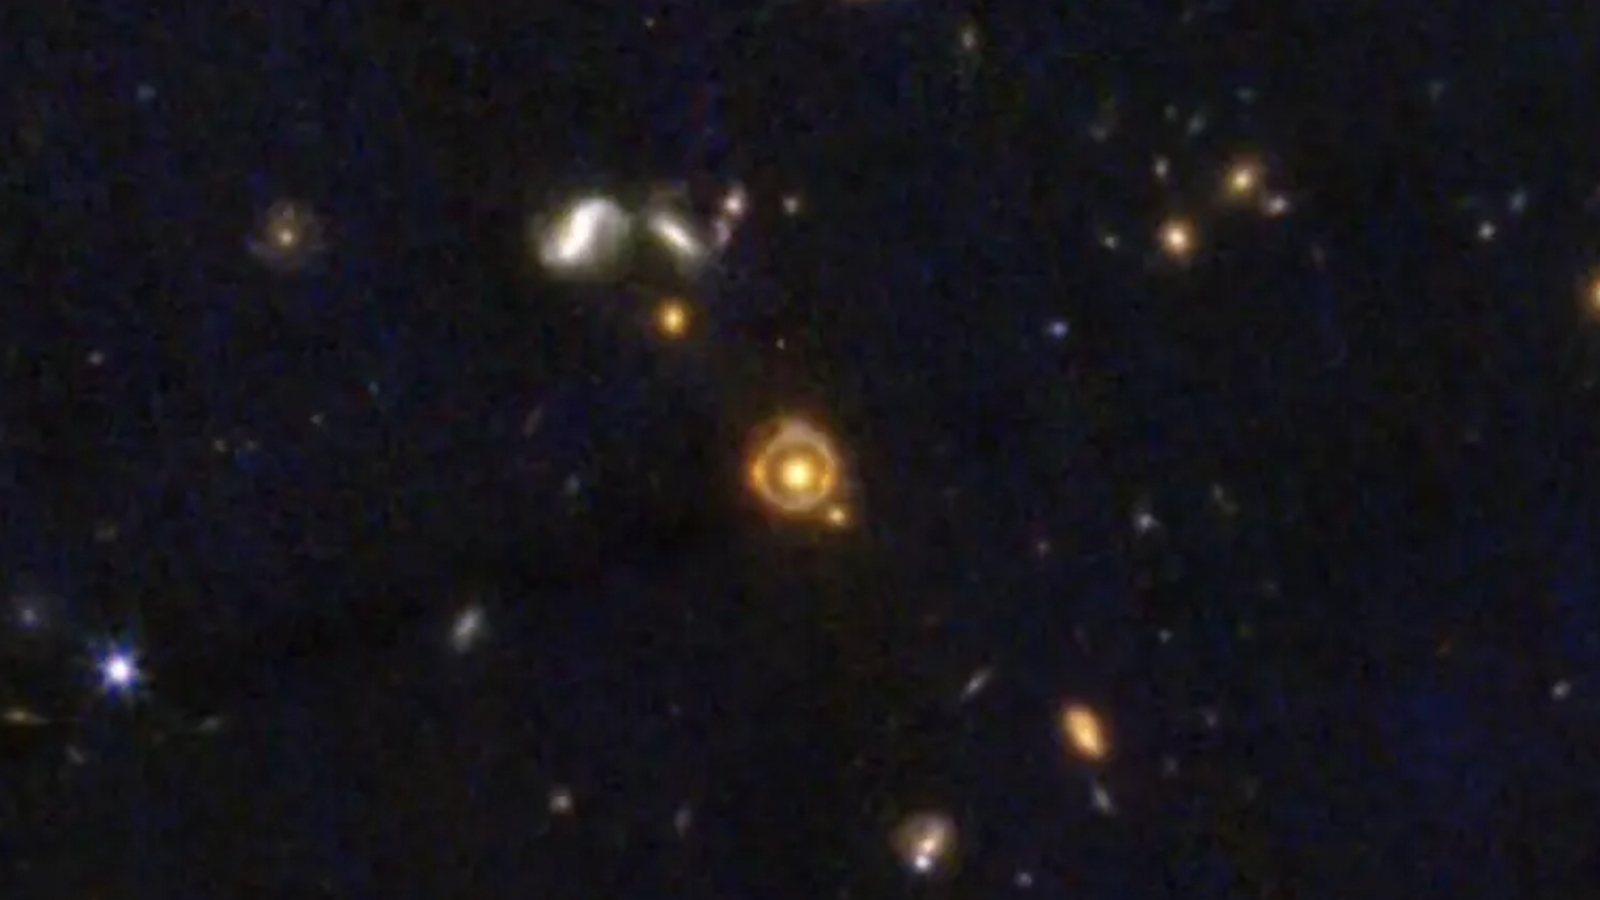 Ein Ring aus orangefarbenem Licht umgibt eine gelbe Galaxie in der mit Sternen gefüllten Bildmitte